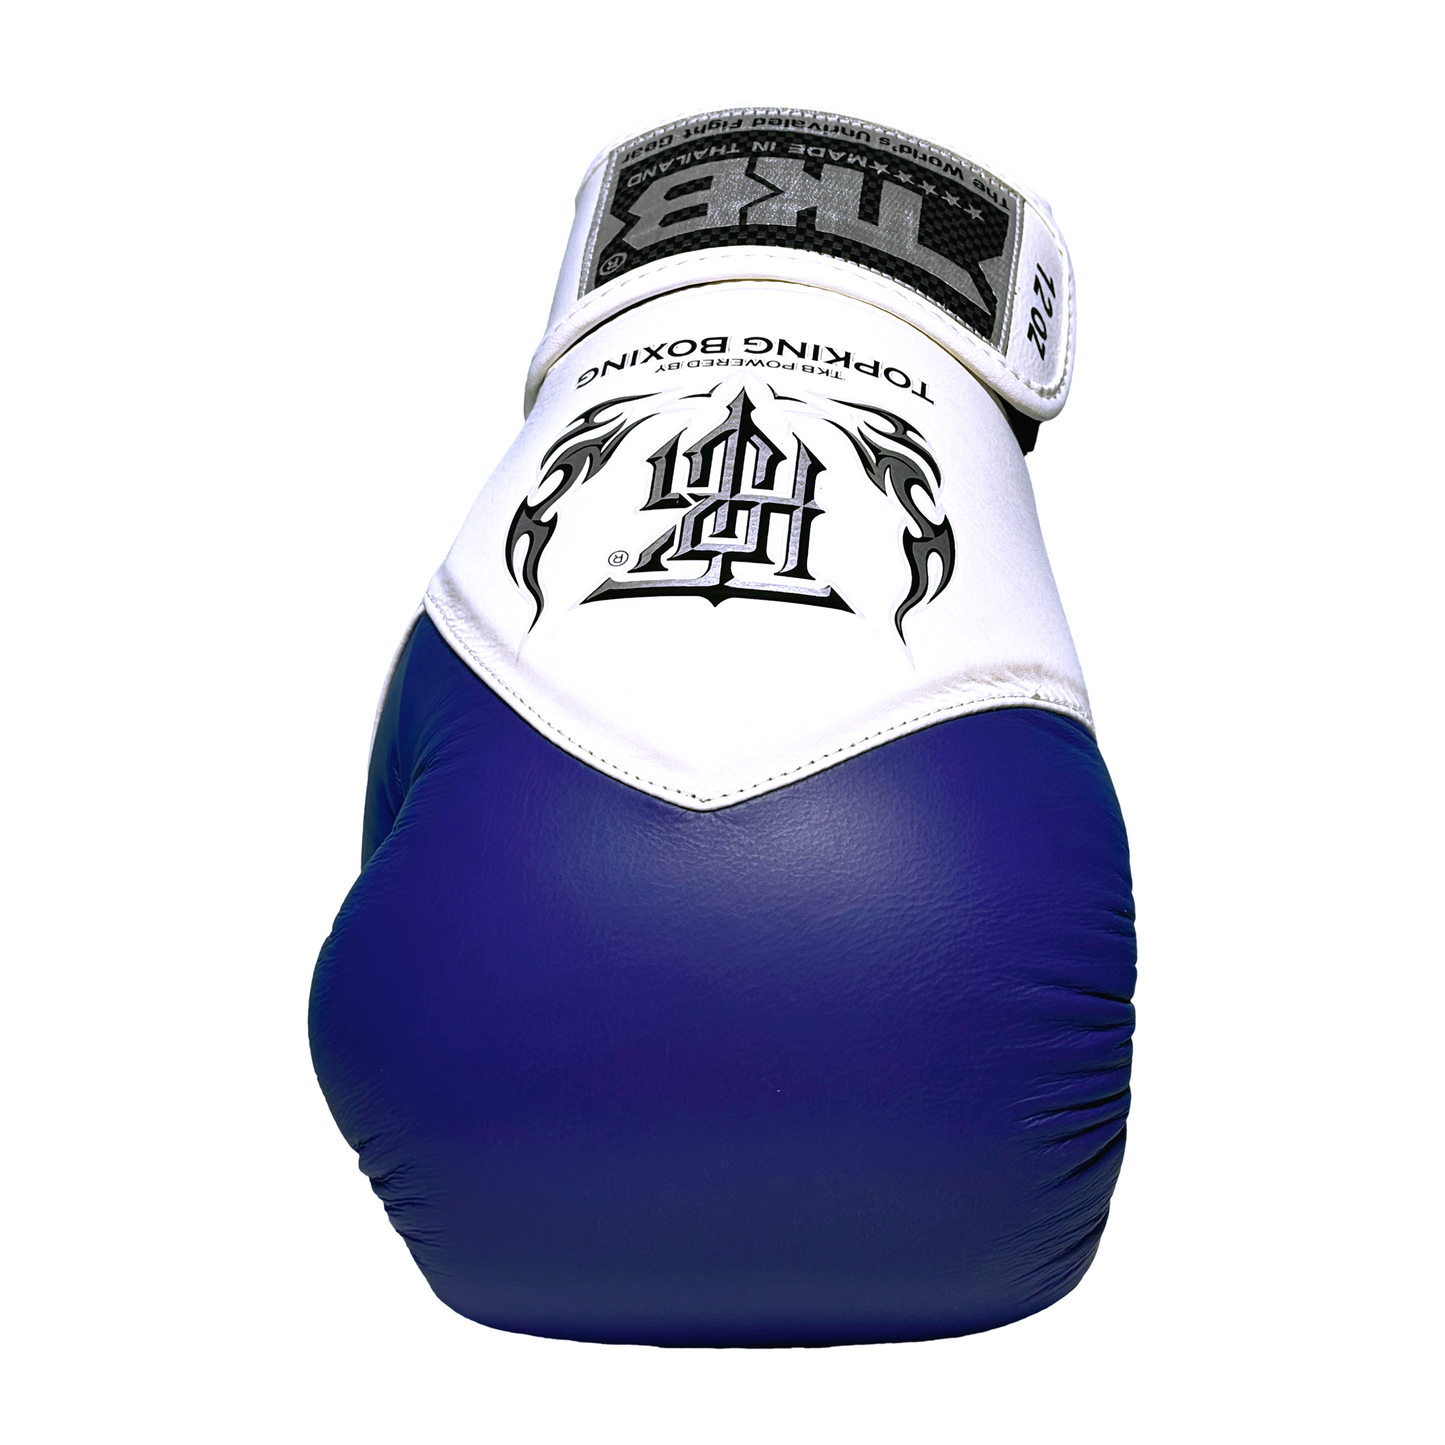 Top King Boxhandschuhe "Blend" blau/weiss